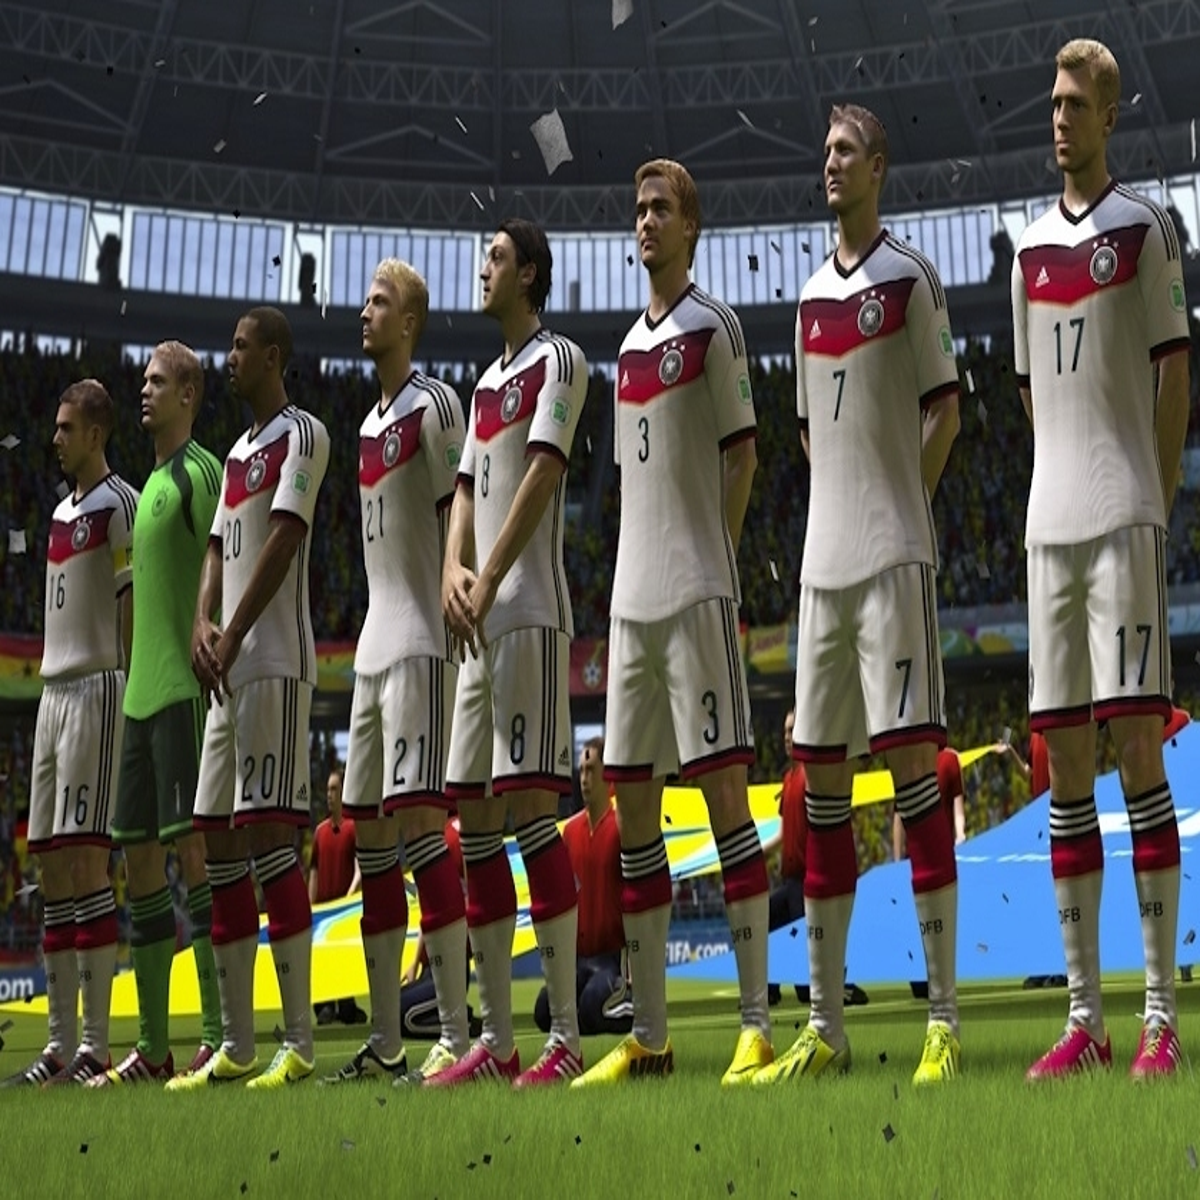 FIFA 14 to Include New Brazilian Club Licenses